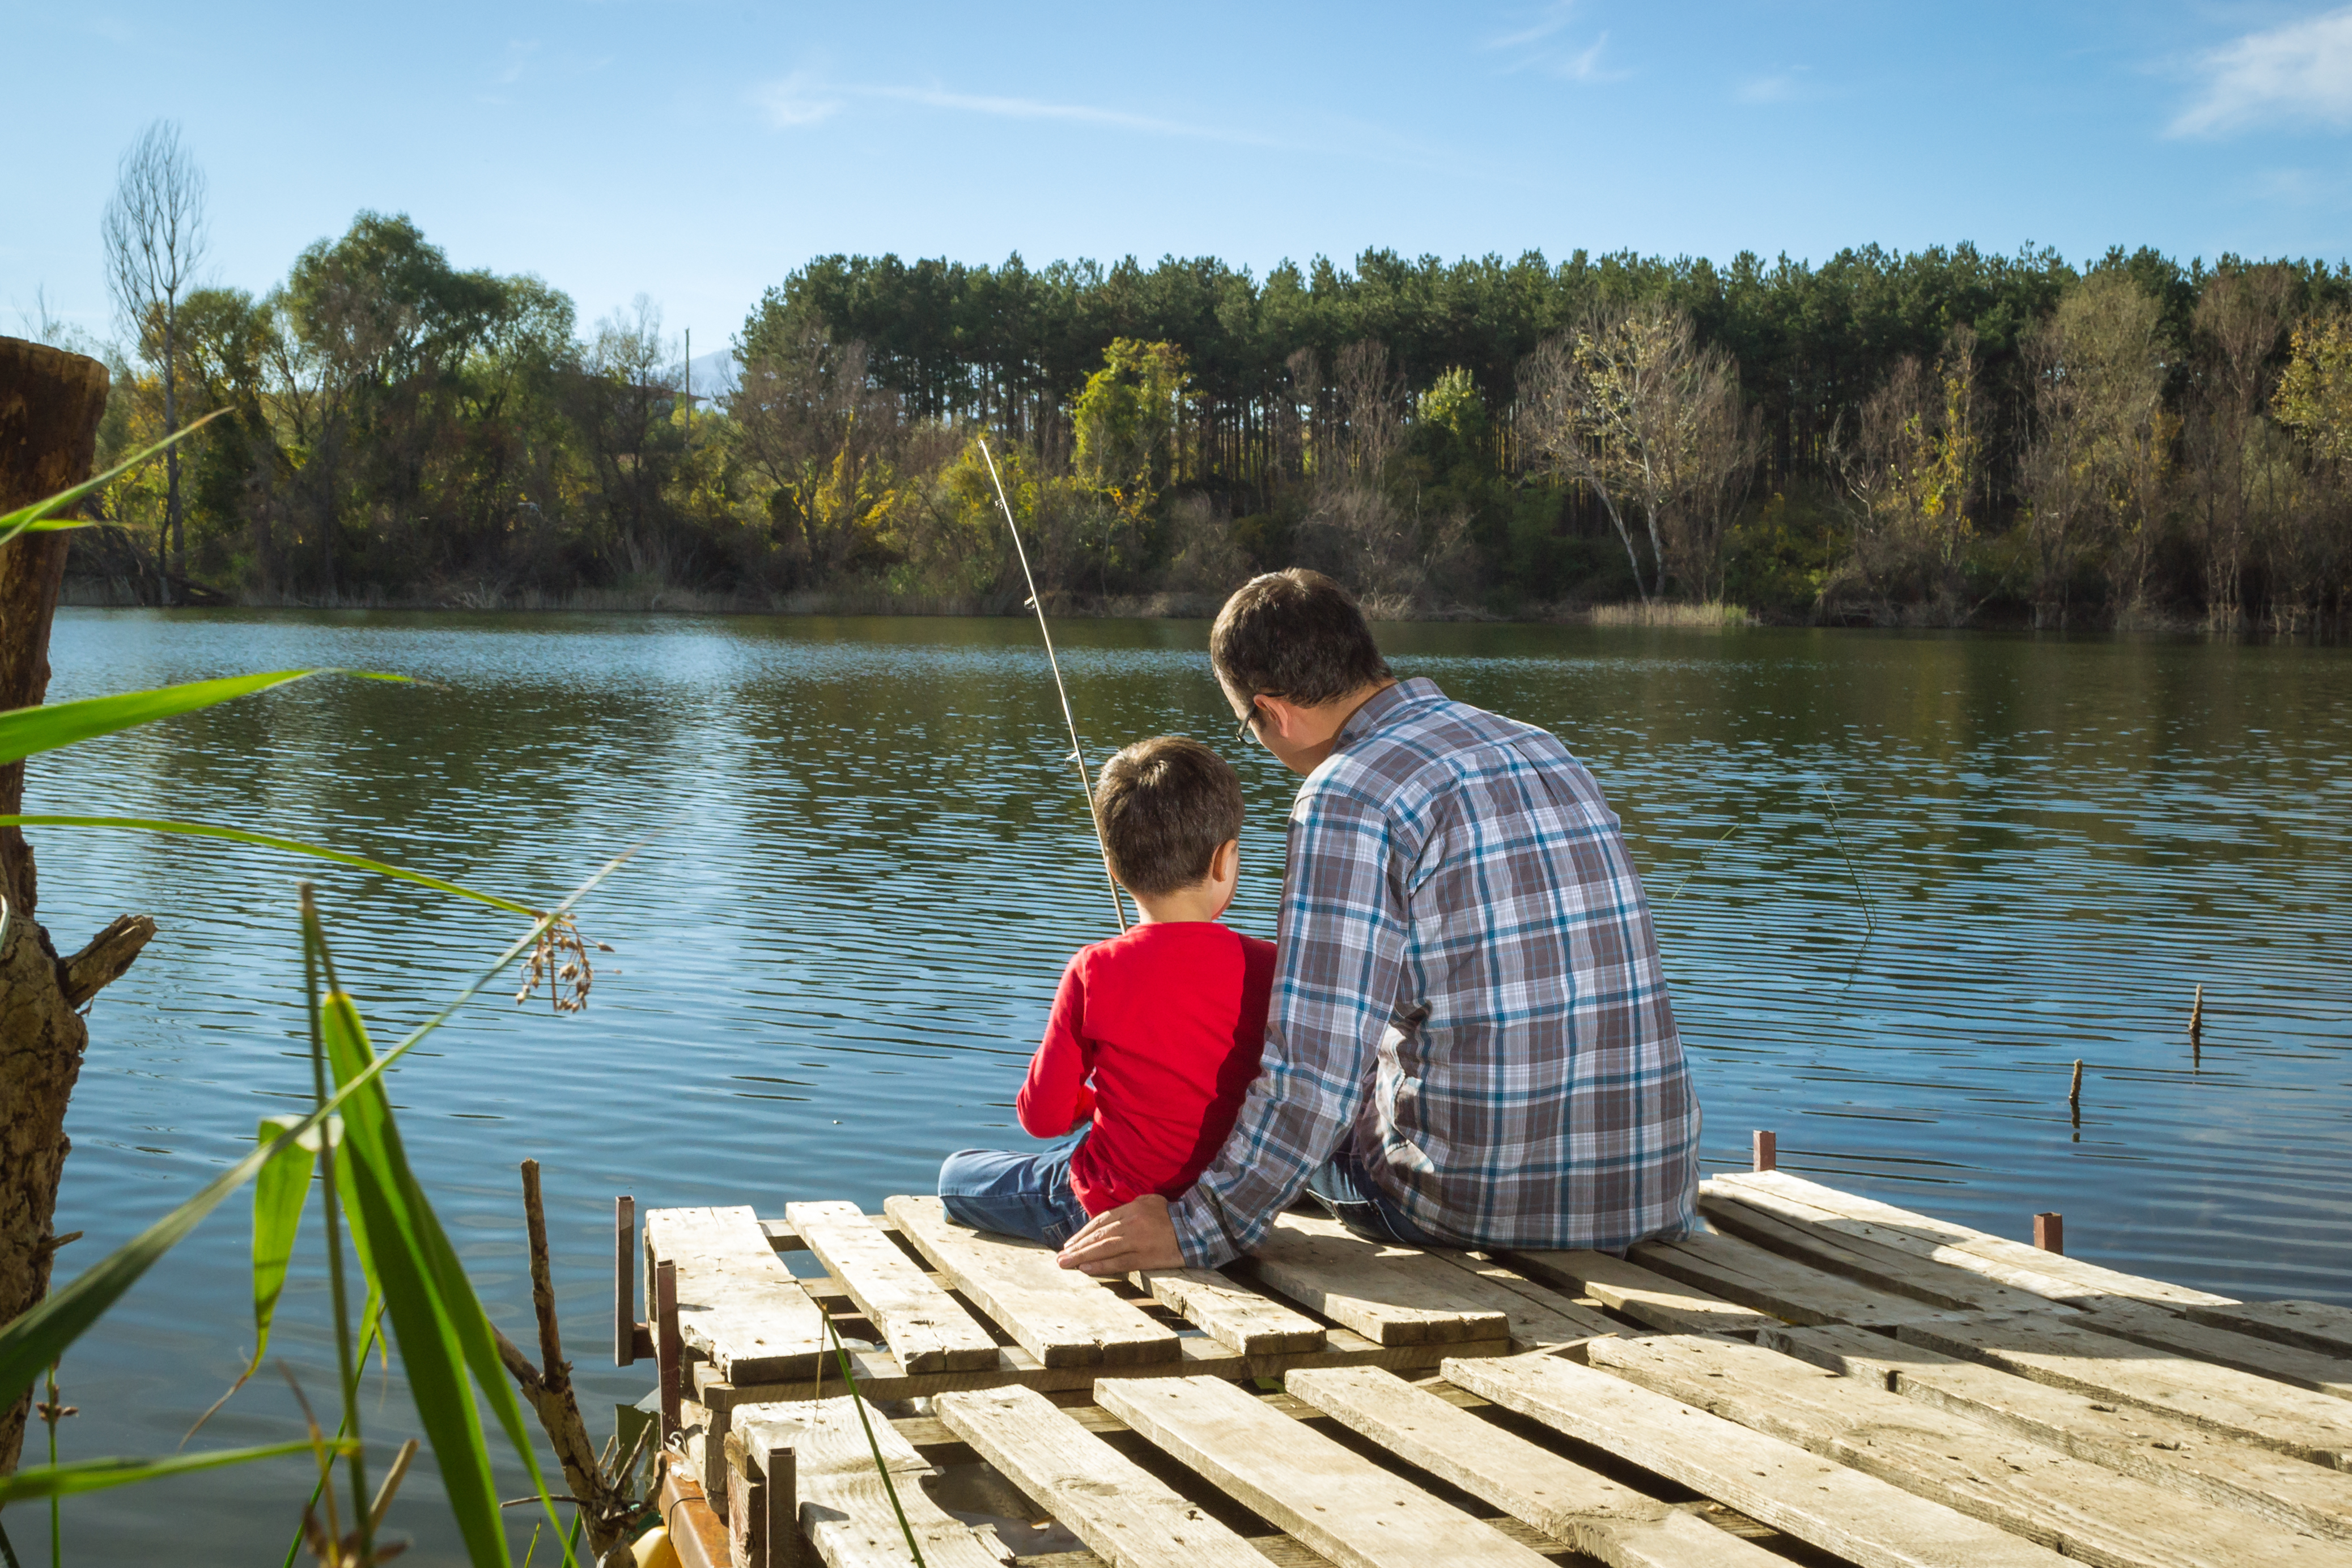 Fishing | Source: Shutterstock